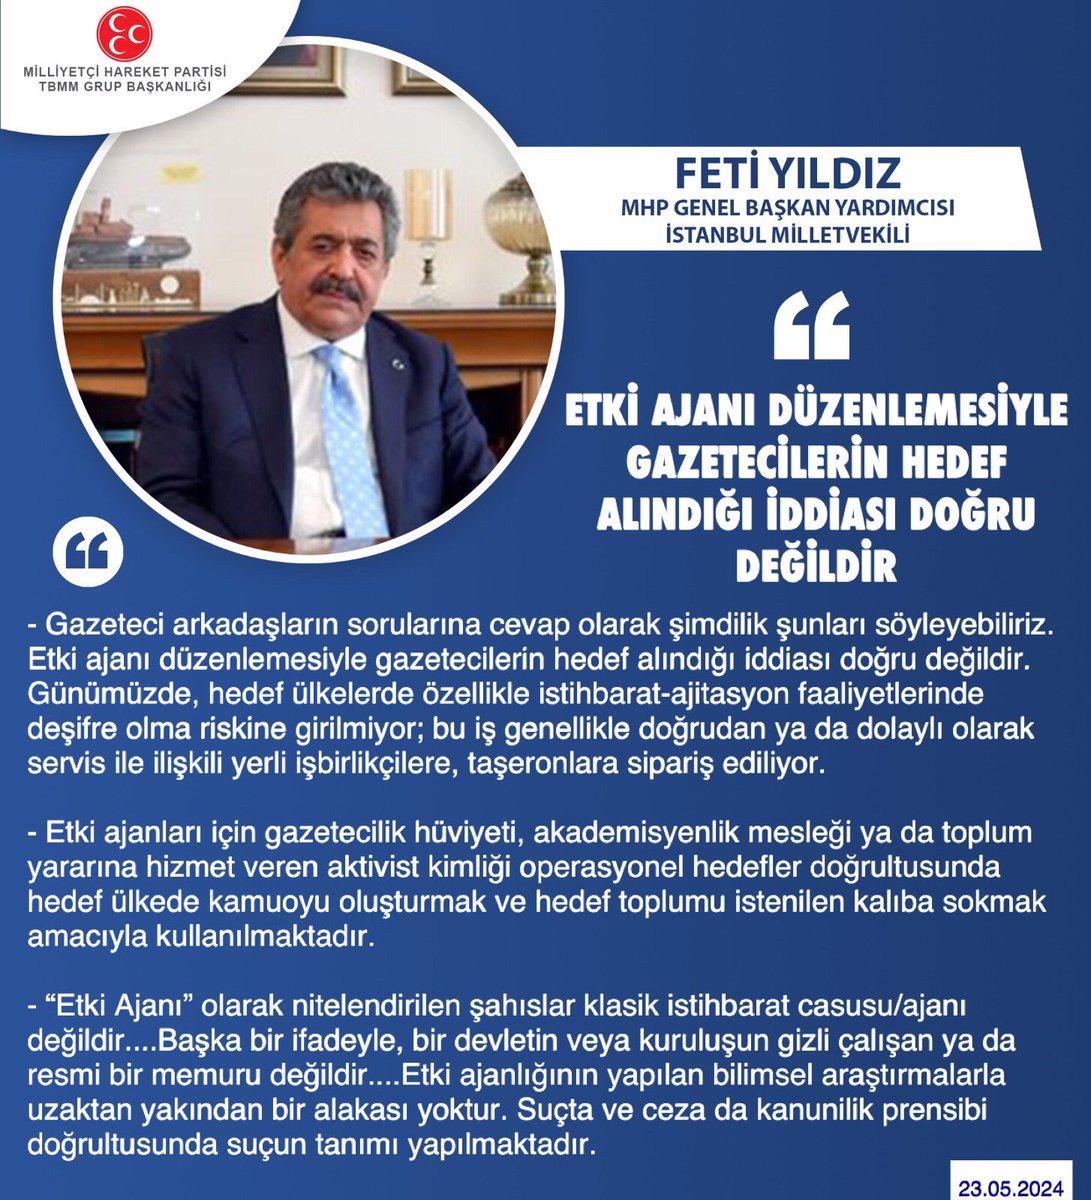 MHP Genel Başkan Yardımcısı ve İstanbul Milletvekilimiz Feti Yıldız @YildizFeti: Etki ajanı düzenlemesiyle gazetecilerin hedef alındığı iddiası doğru değildir